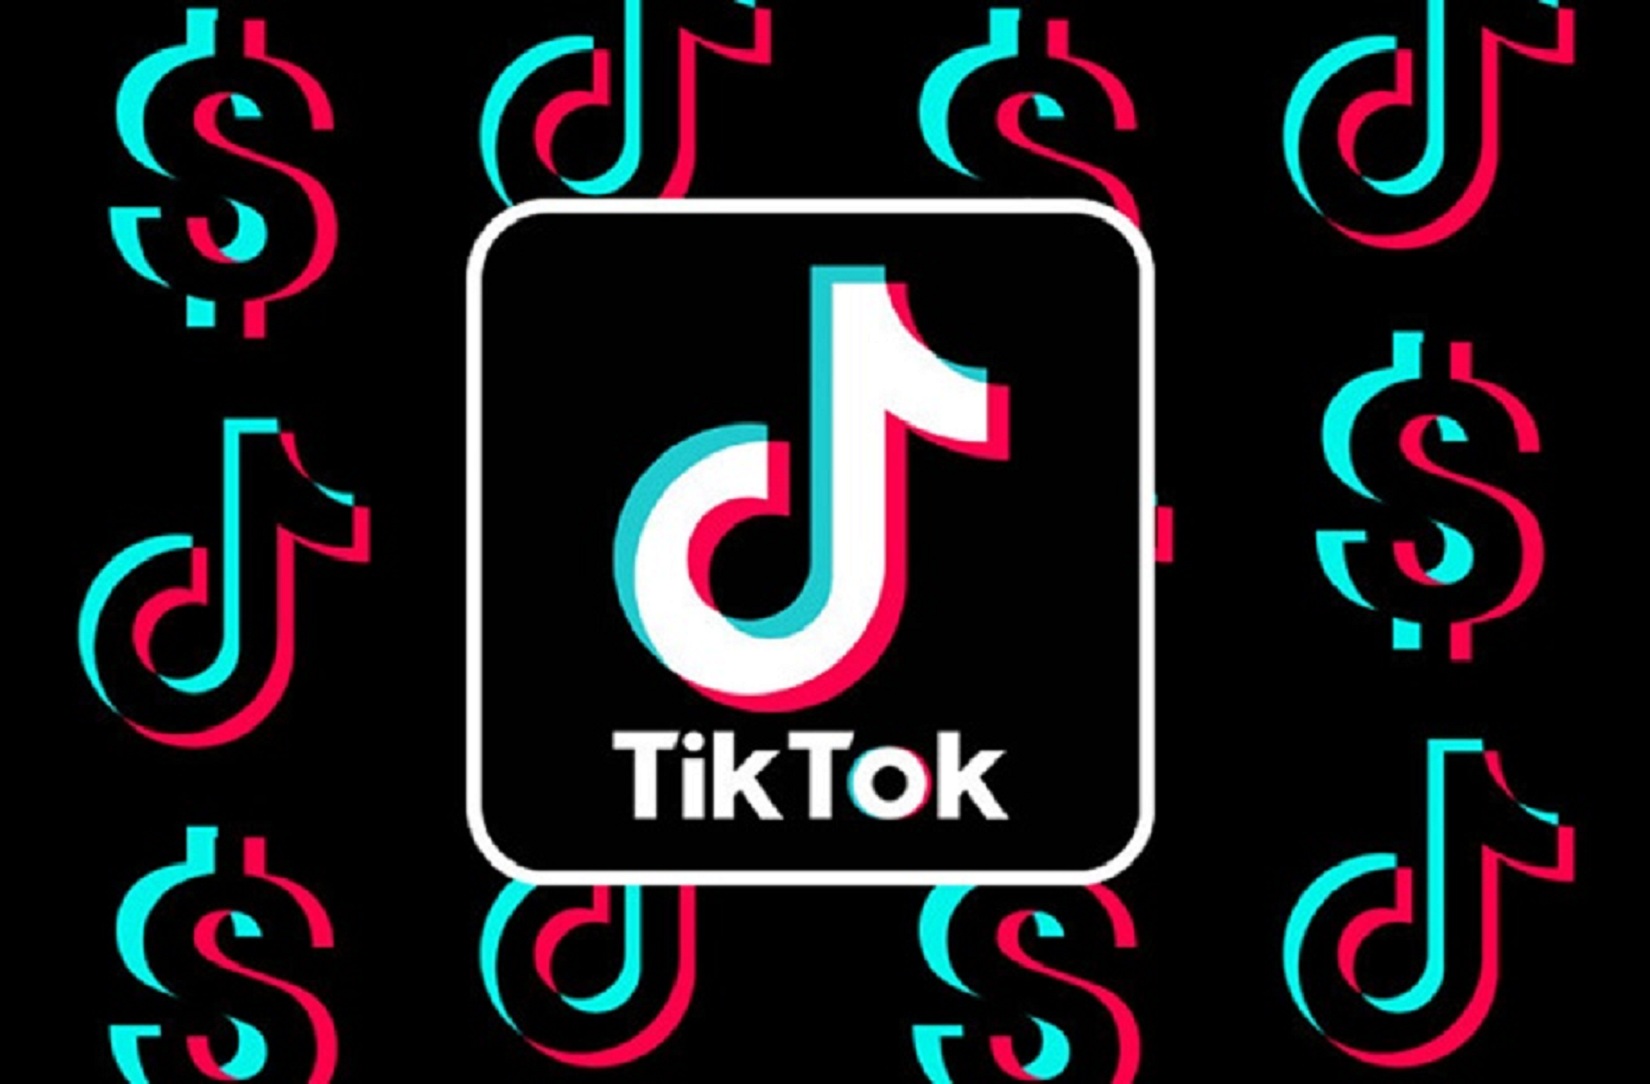 Mã giới thiệu Tiktok cho người dùng mới, nhận ngay 140.000đ. Cùng lan tỏa kiếm thêm 1.400.000đ